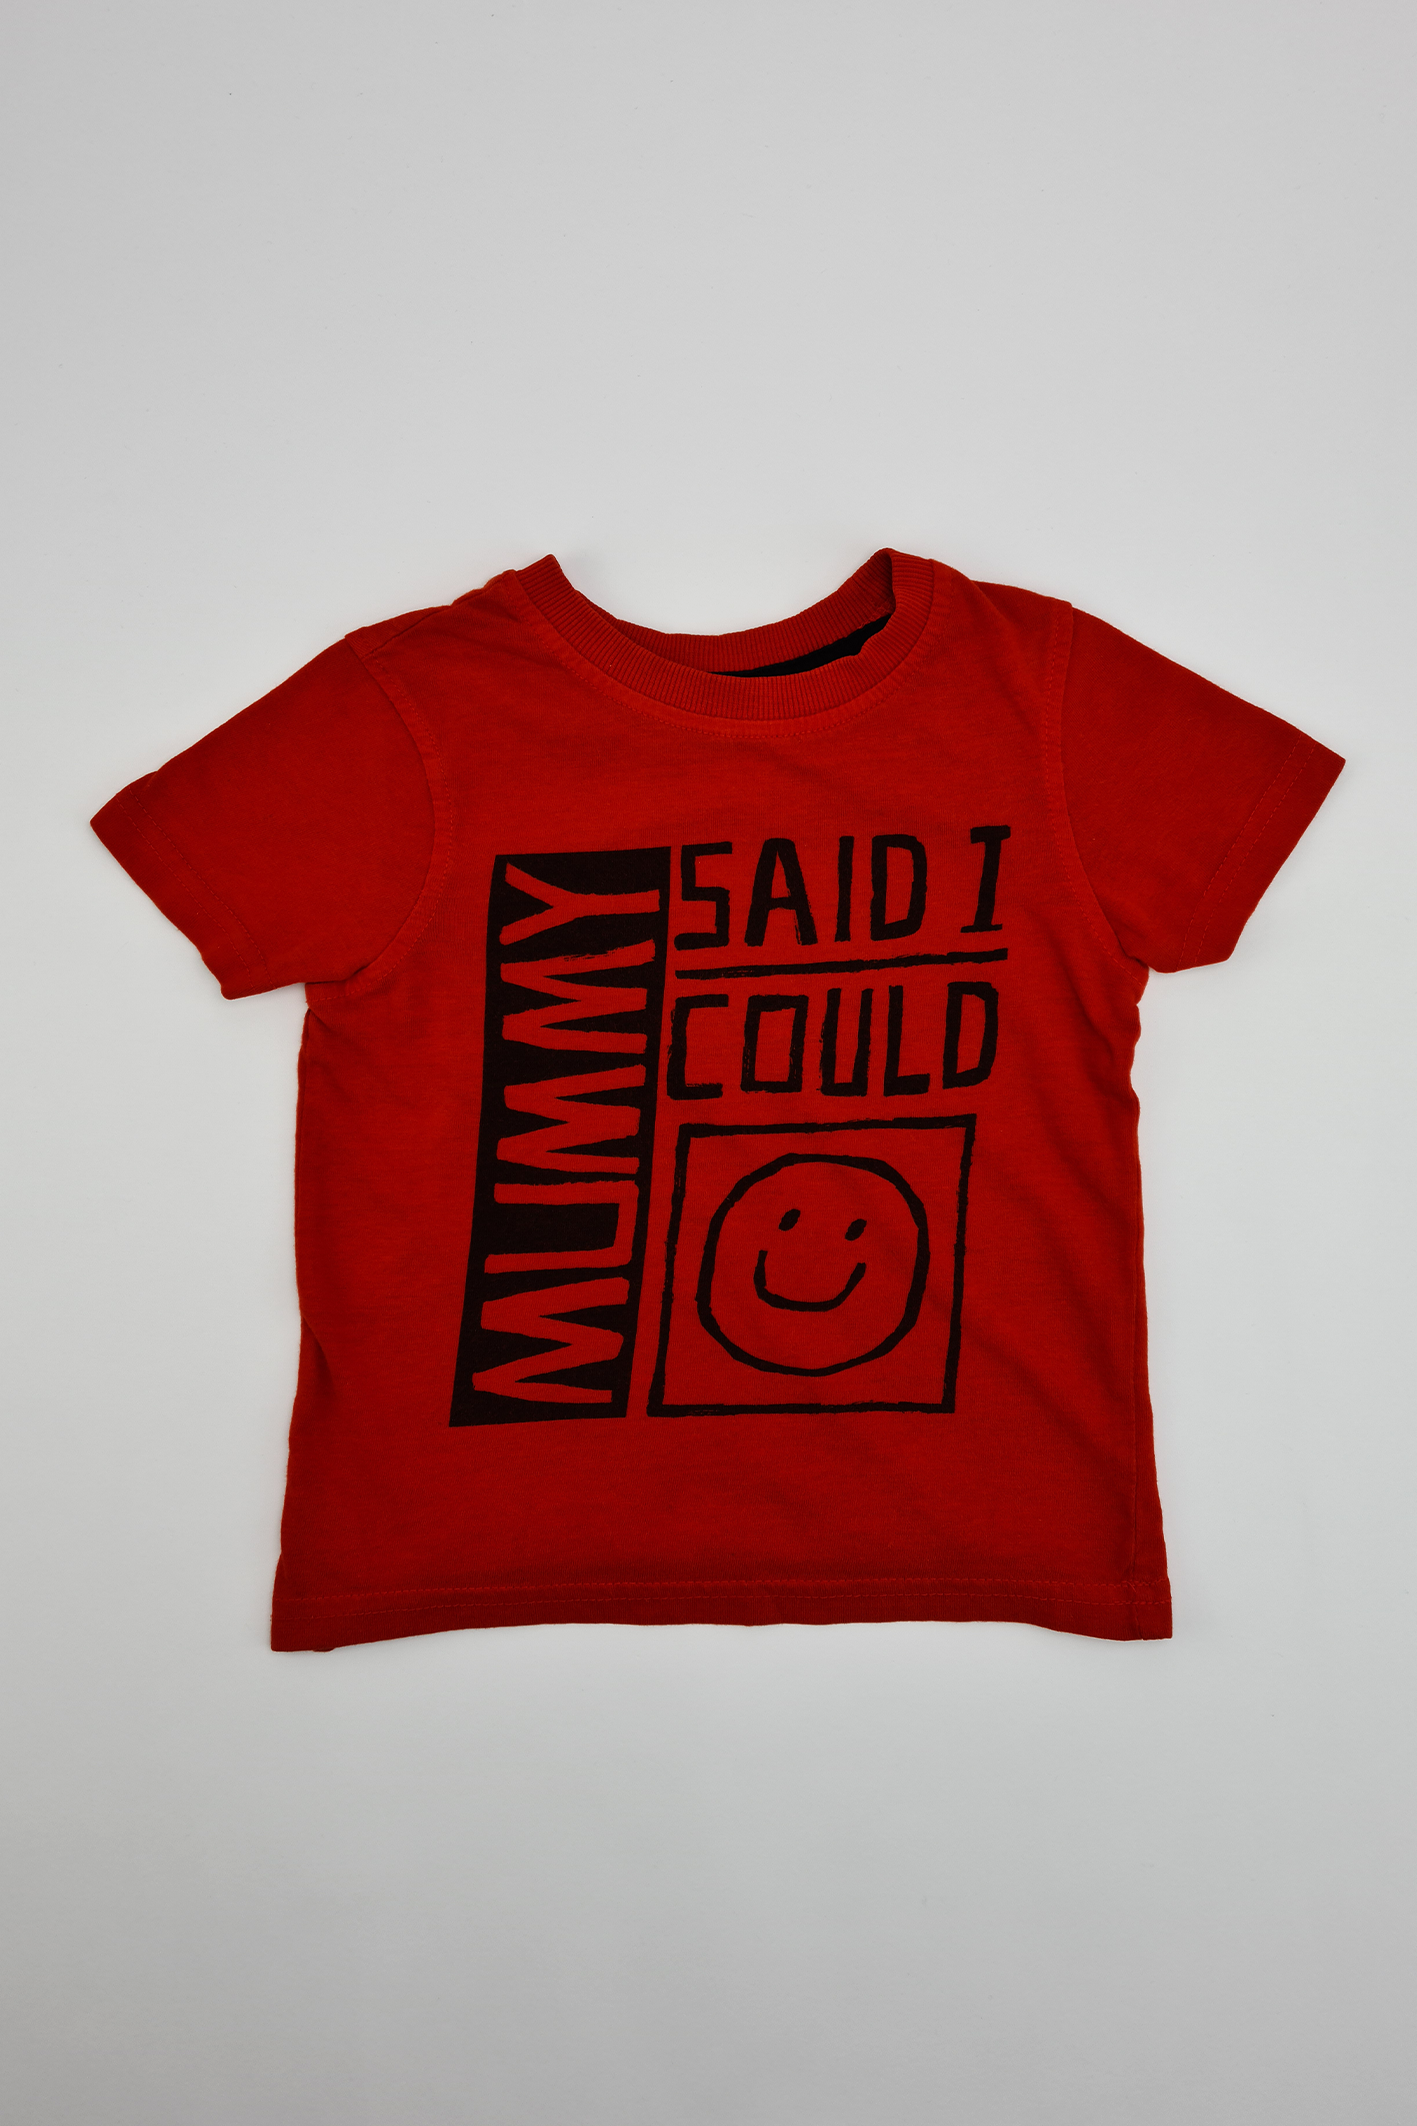 'Mummy Said I Could' T-shirt - Precuddled.com